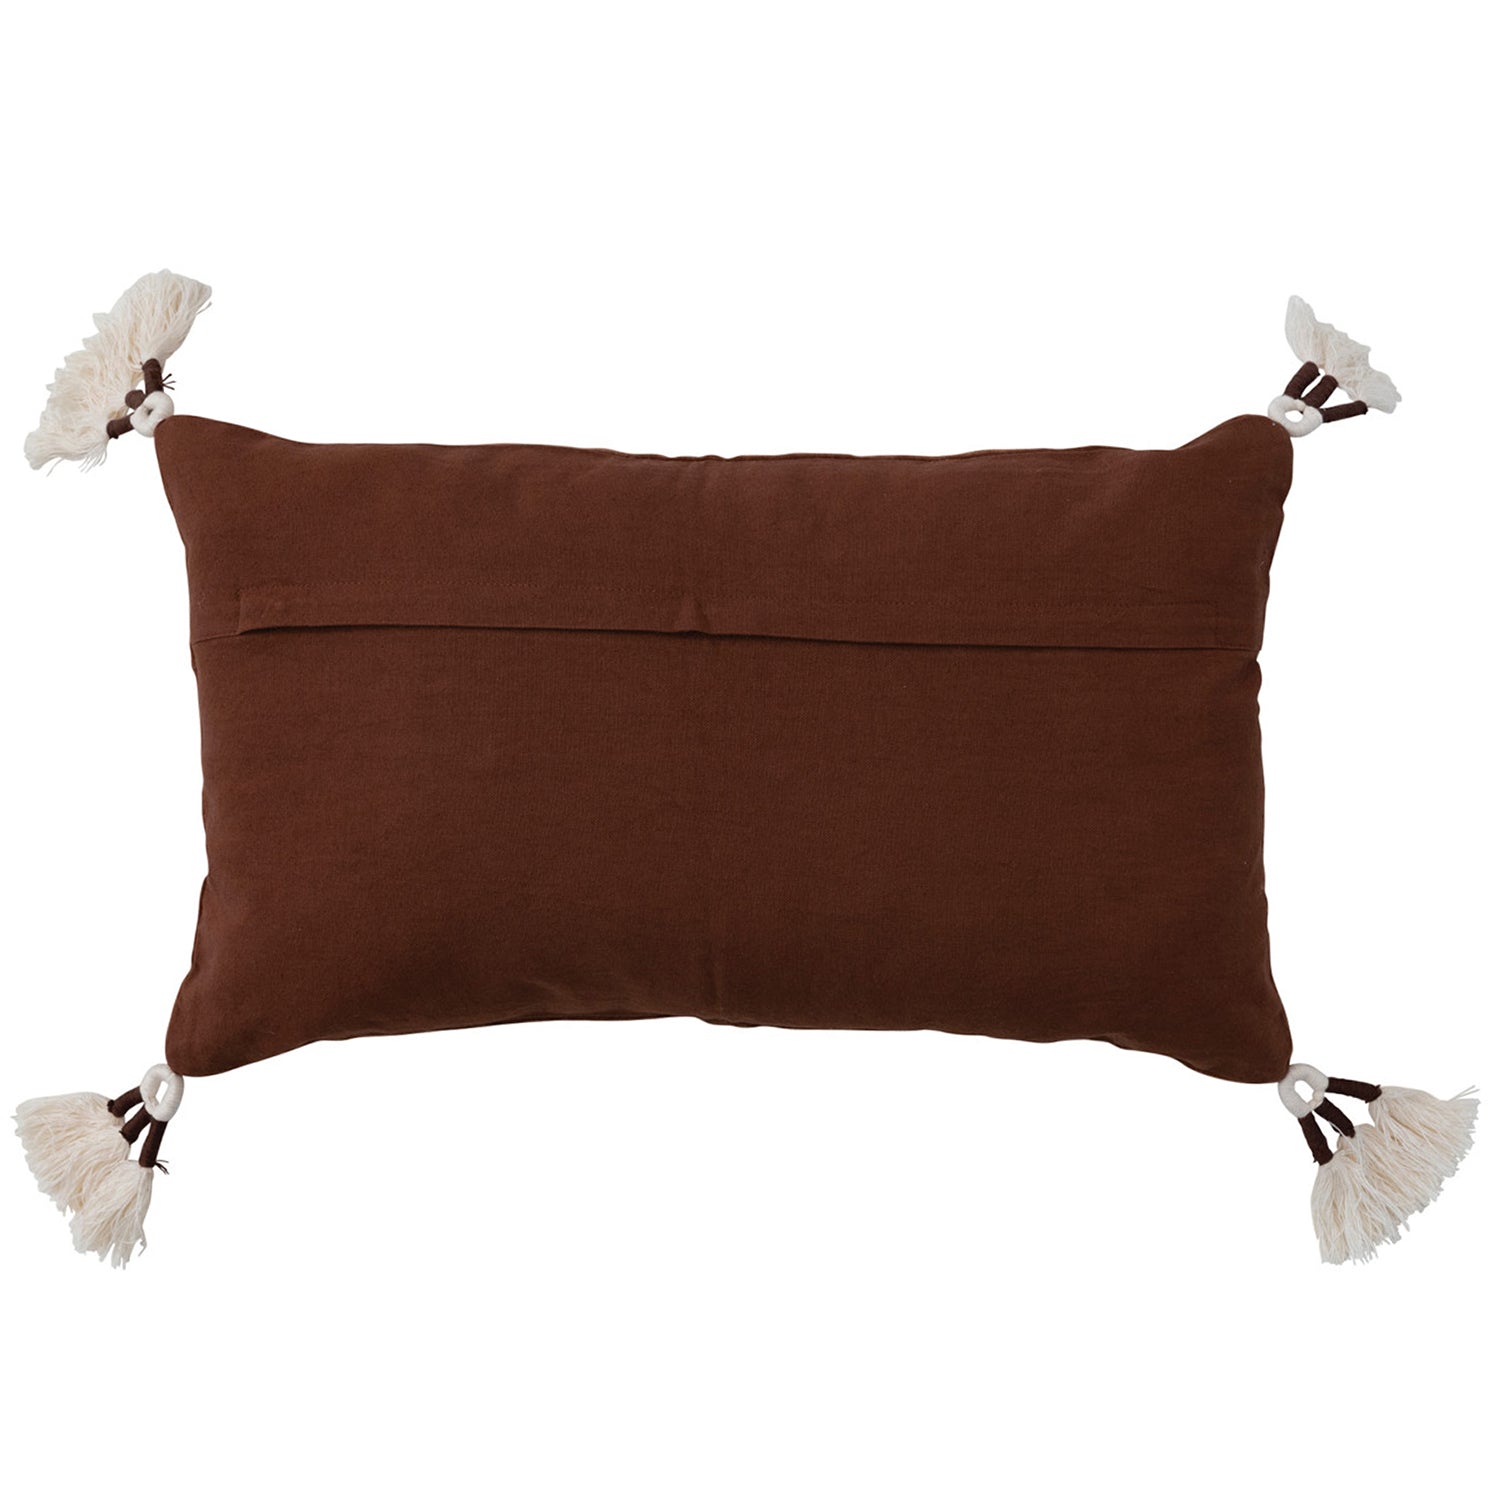 Brown Velvet Cotton Lumbar Pillow With Tassels